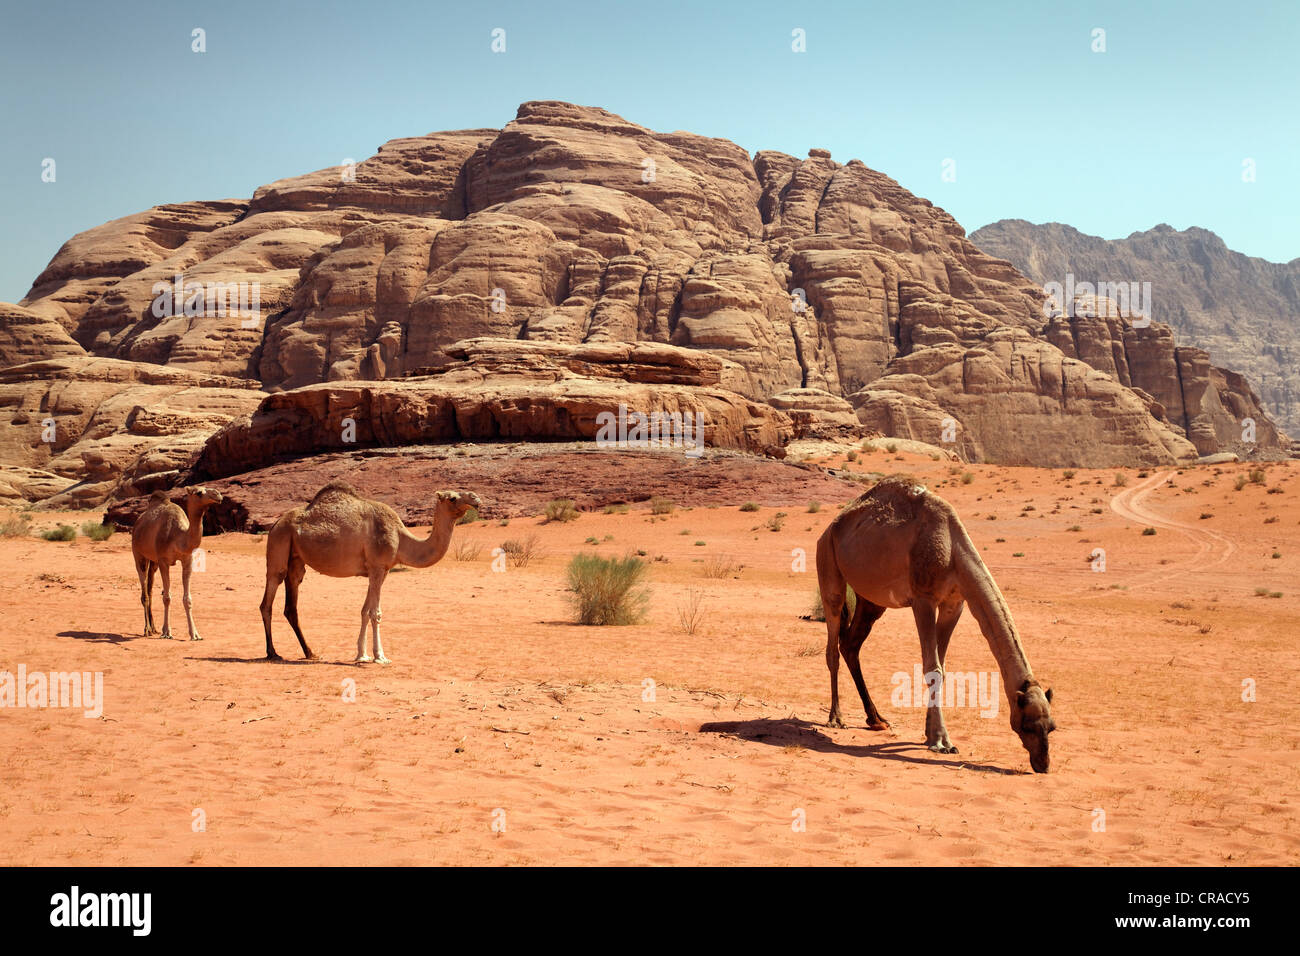 Des dromadaires ou des chameaux d'Arabie (Camelus dromedarius) dans un désert avec du sable rouge, Wadi Rum, Royaume hachémite de Jordanie, JK Banque D'Images